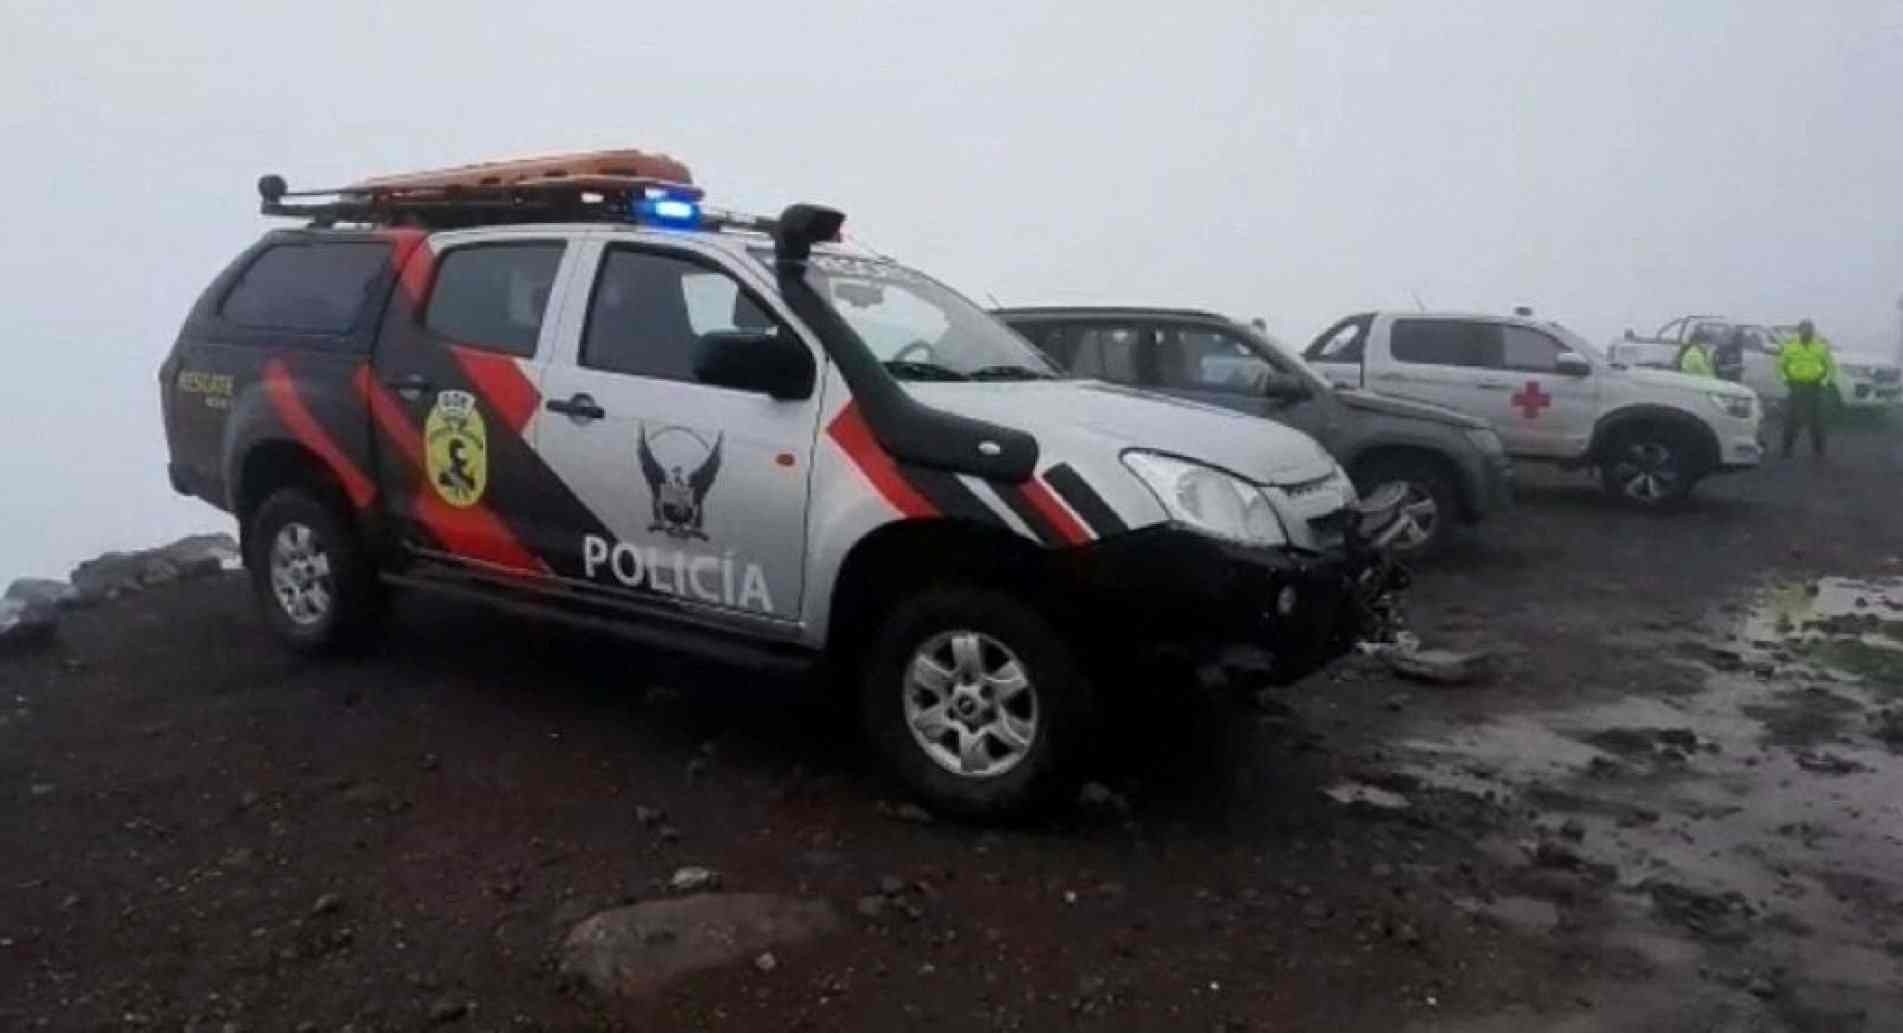 Foto divulgada pela assessoria de imprensa da Polícia Nacional do Equador, mostrando veículos durante uma operação de resgate após um deslizamento de neve